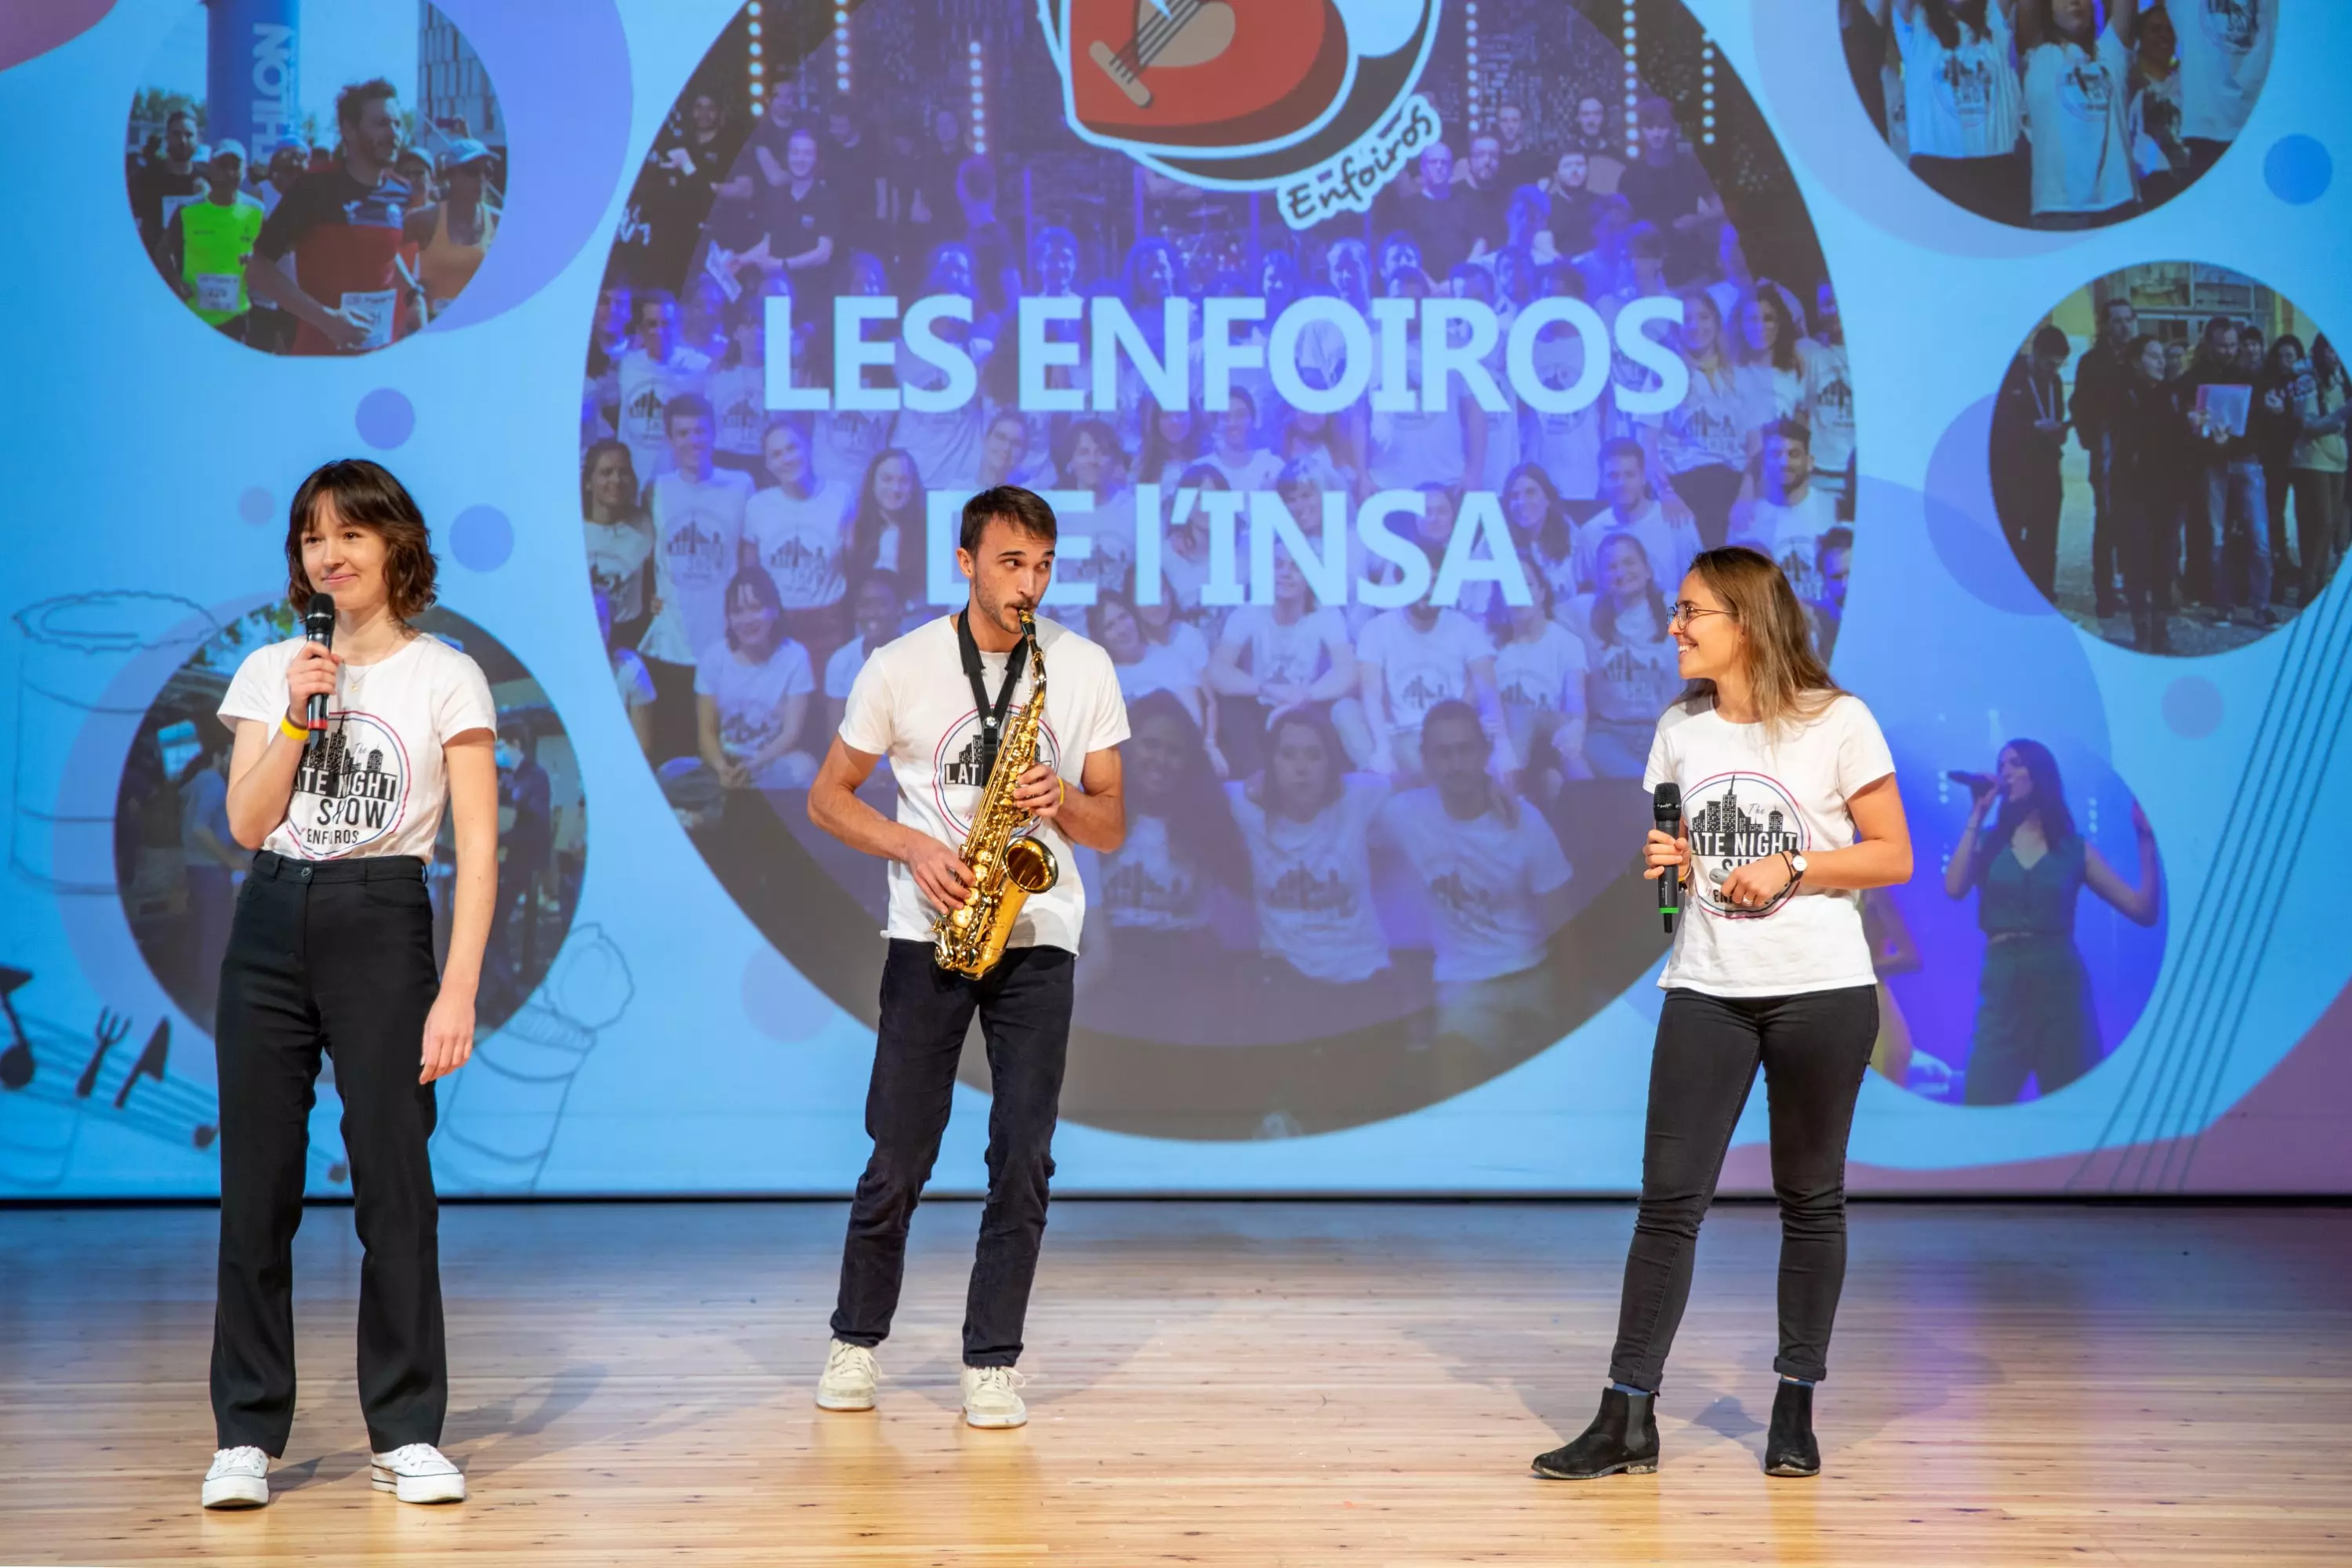 Photo du pitch de l'association Les Enfoiros de l'INSA sur scène avec sa présentation dans le fond